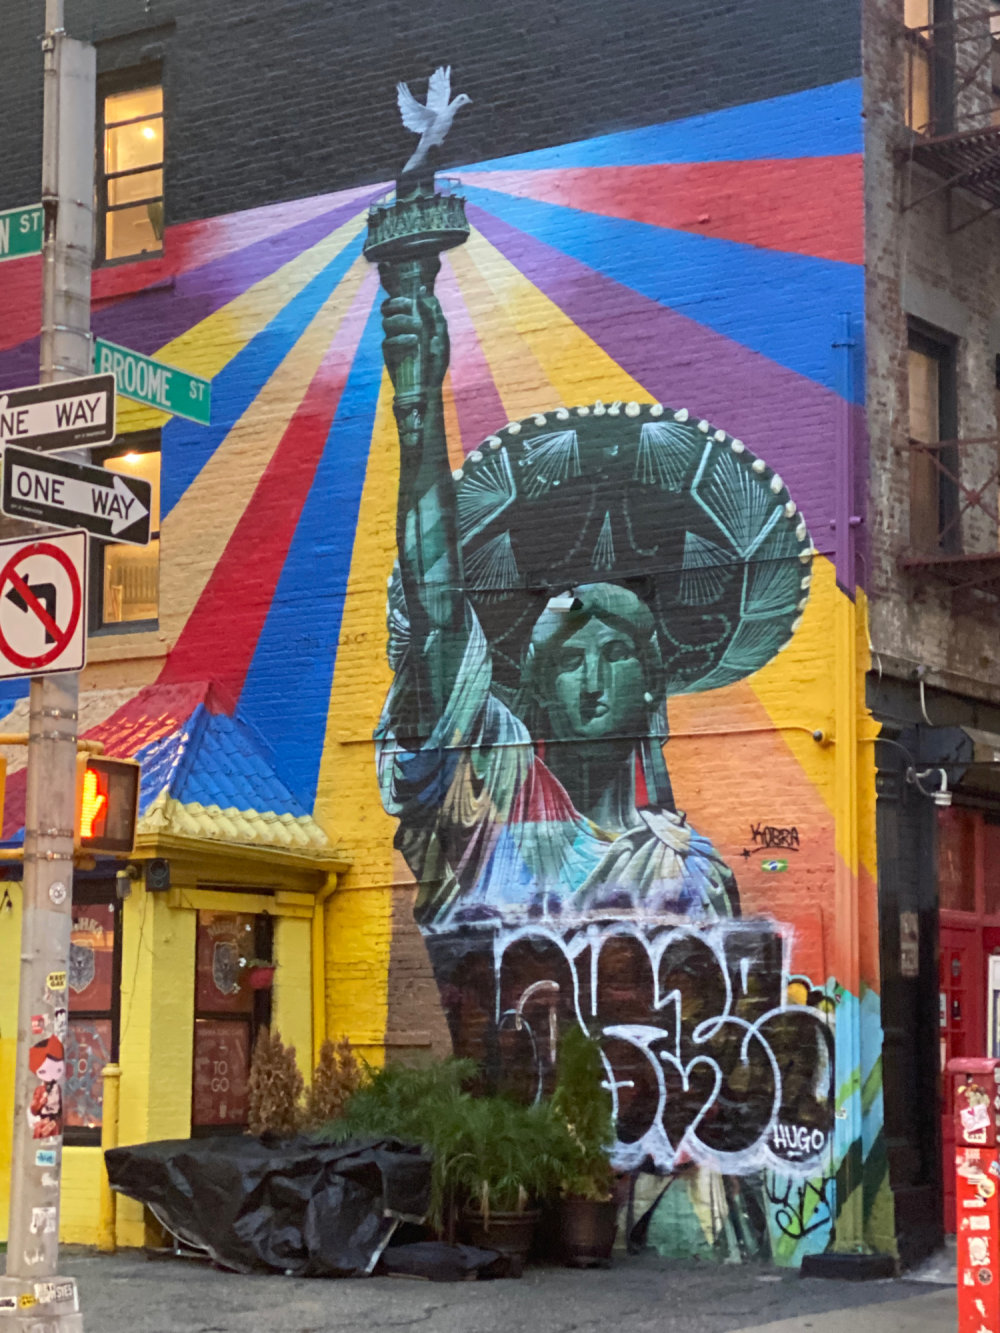 mural in New York by artist Eduardo Kobra.